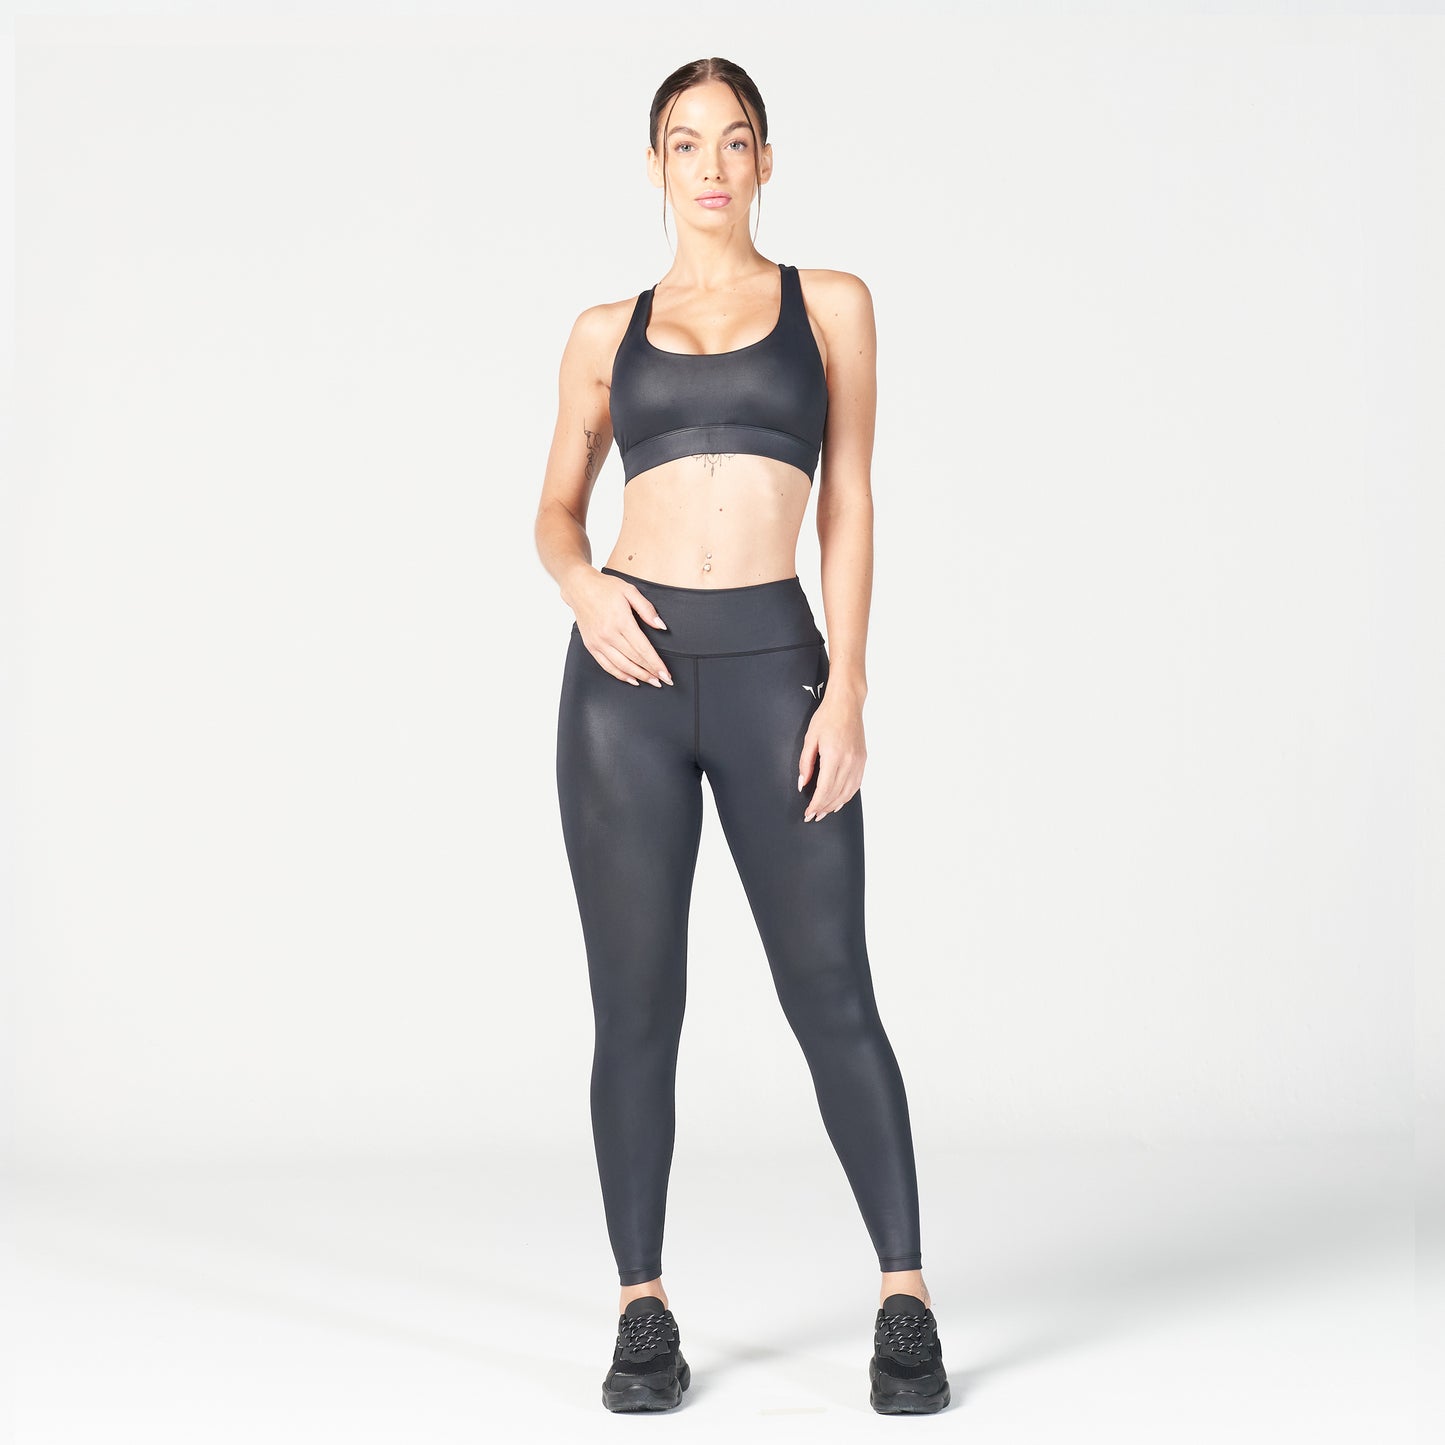 squatwolf-workout-clothes-glaze-sports-bra-black-sports-bra-for-gym